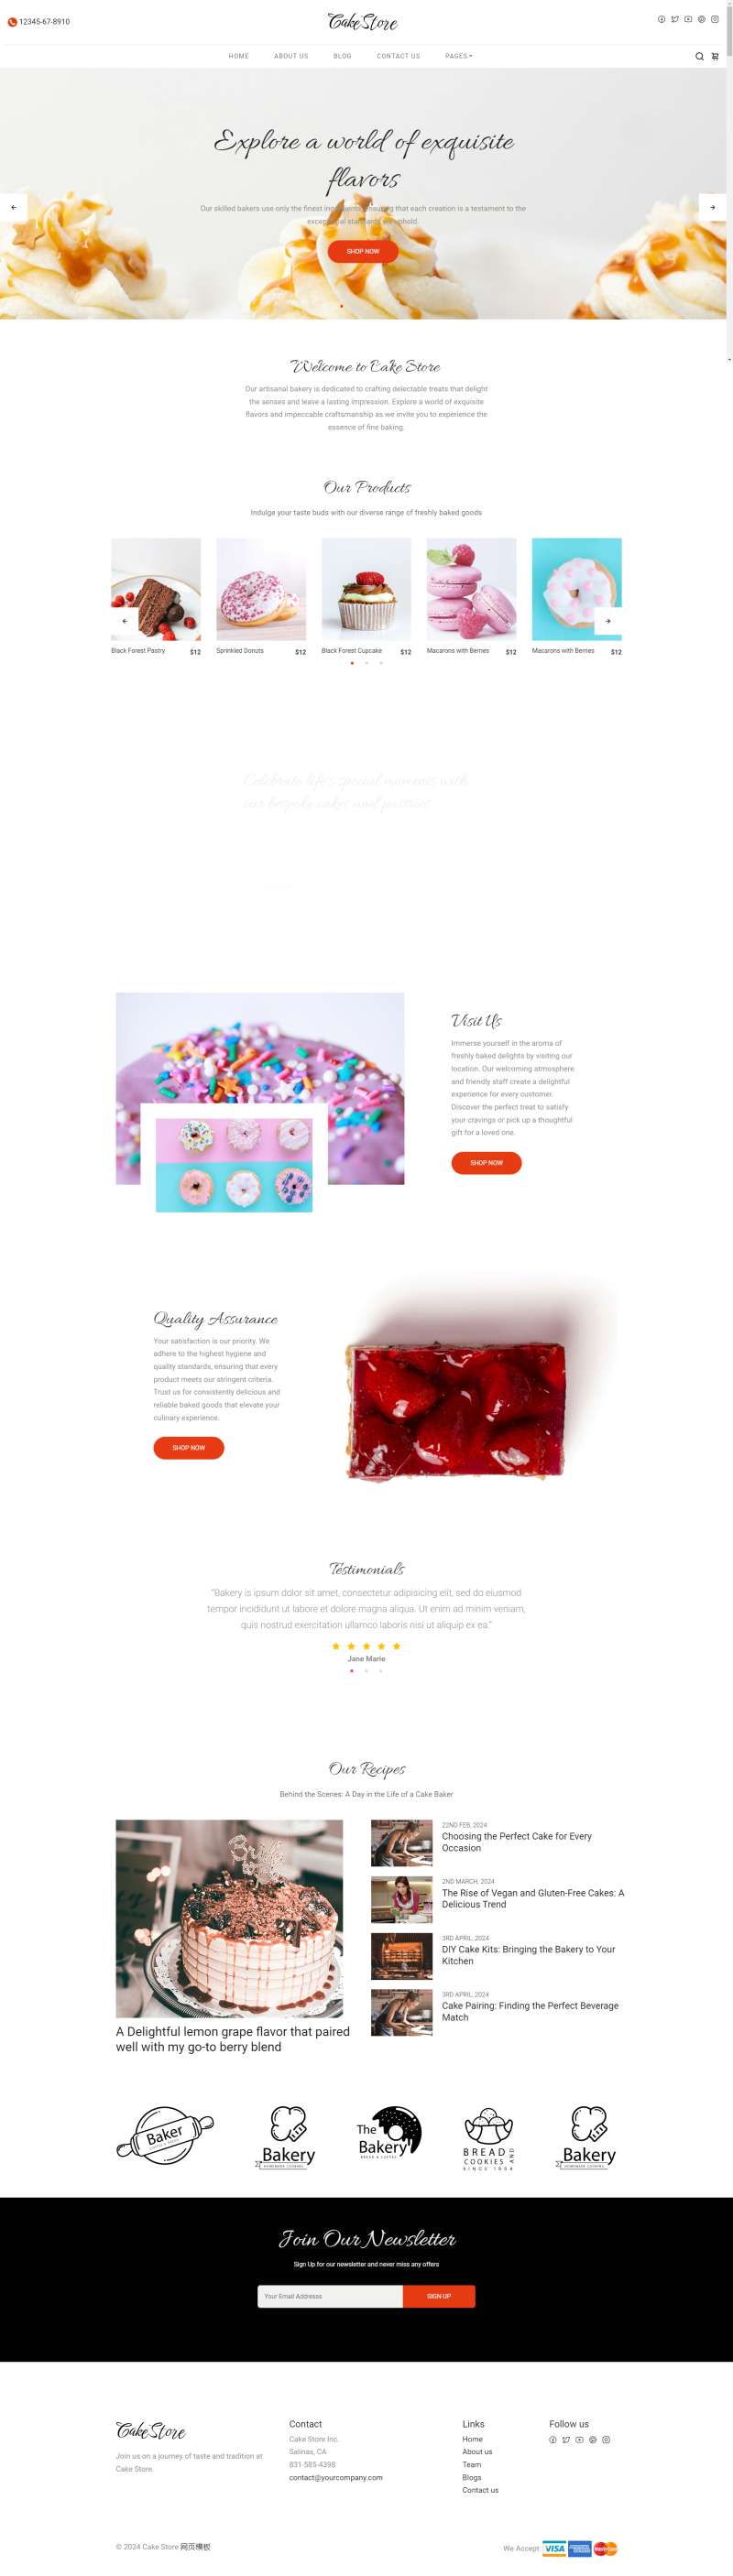 经典蛋糕甜品店网页设计源代码模板html